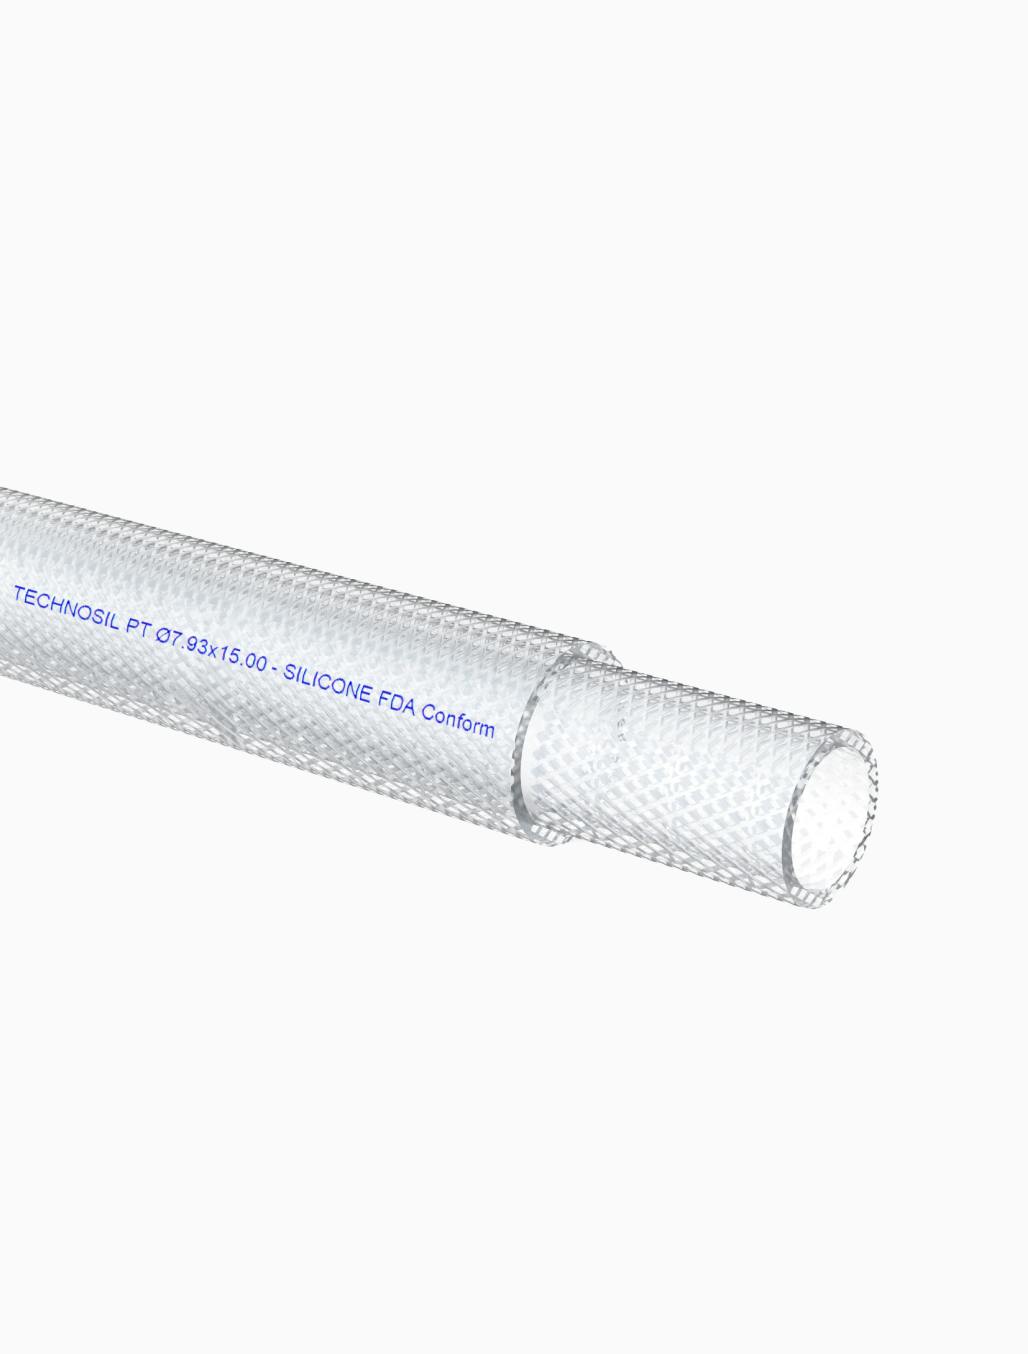 Silicone hose Vena® Technosil